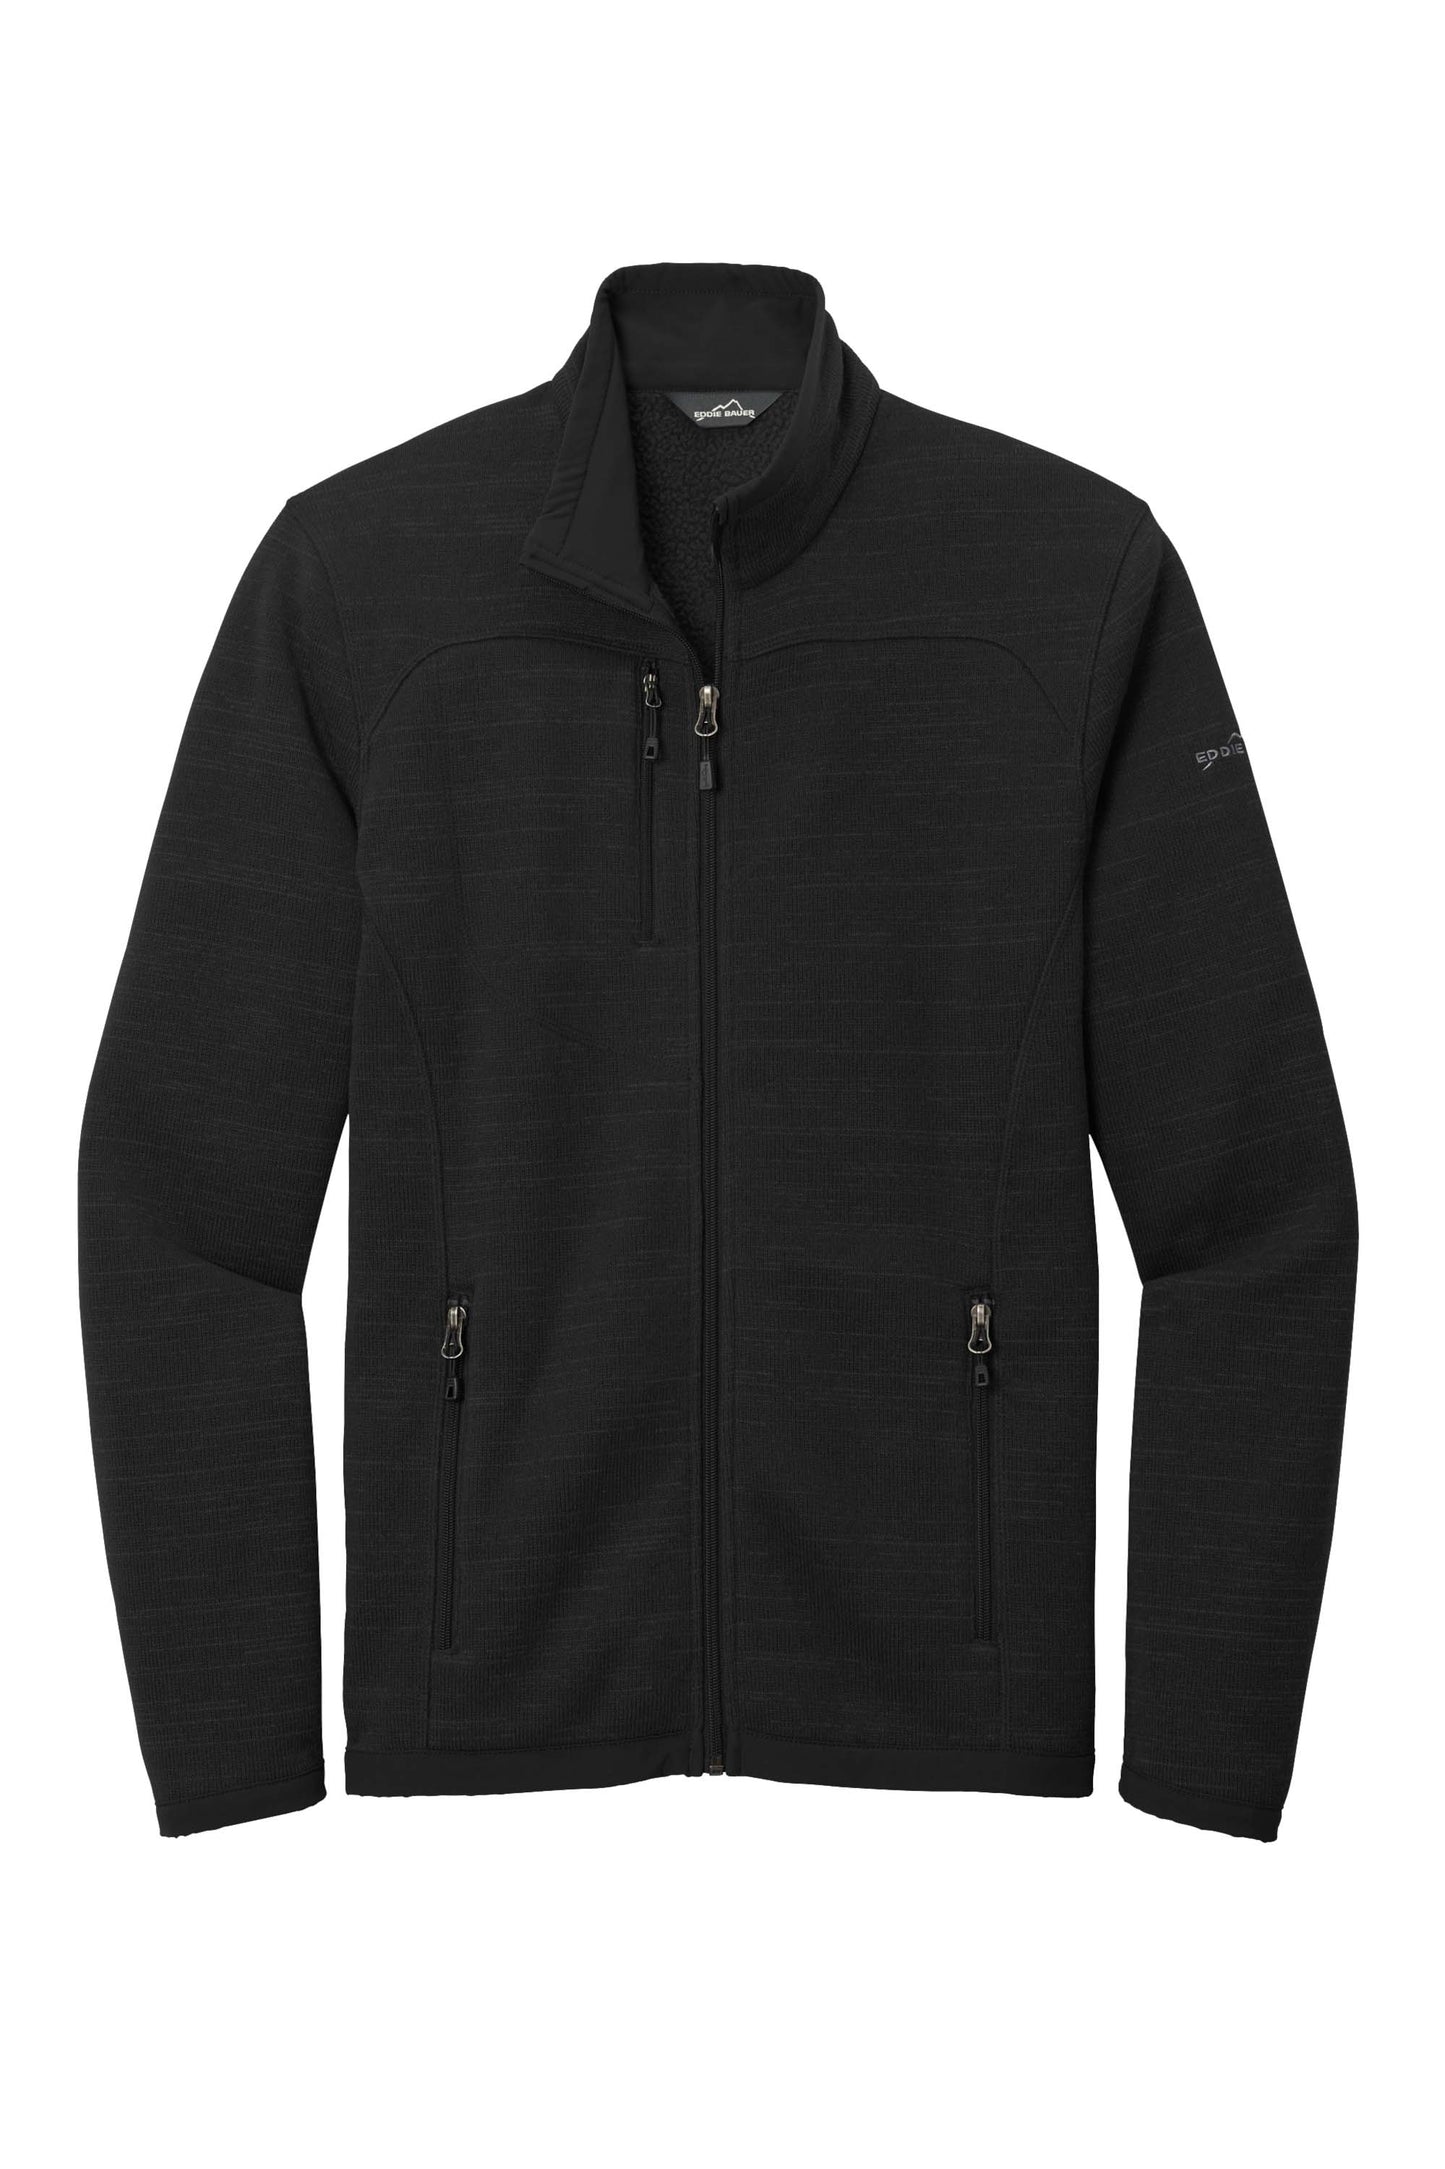 Eddie Bauer Premium Fleece Jacket